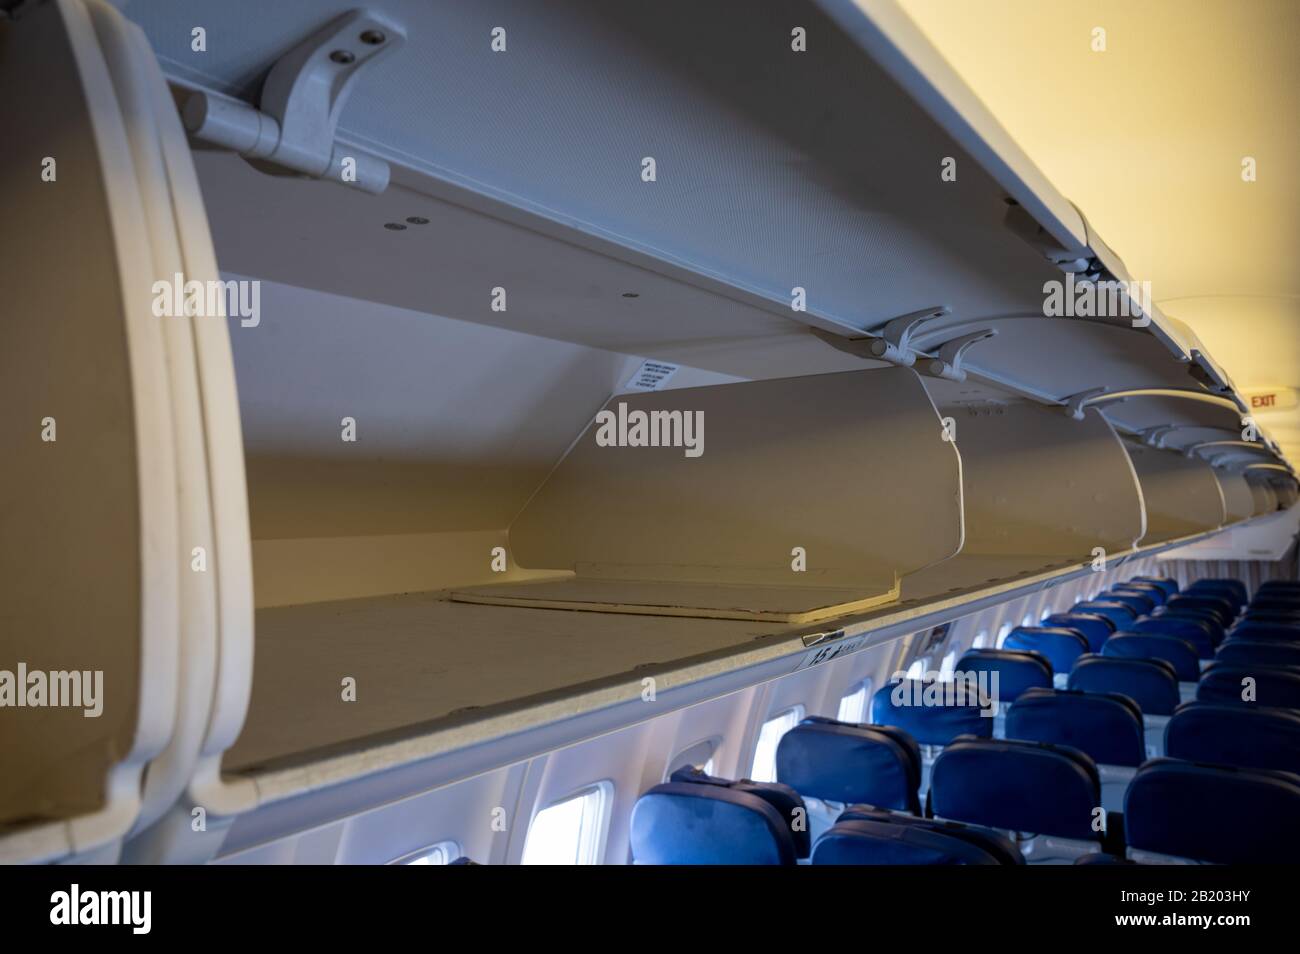 Empty overhead passenger bins of a passenger aircraft Stock Photo